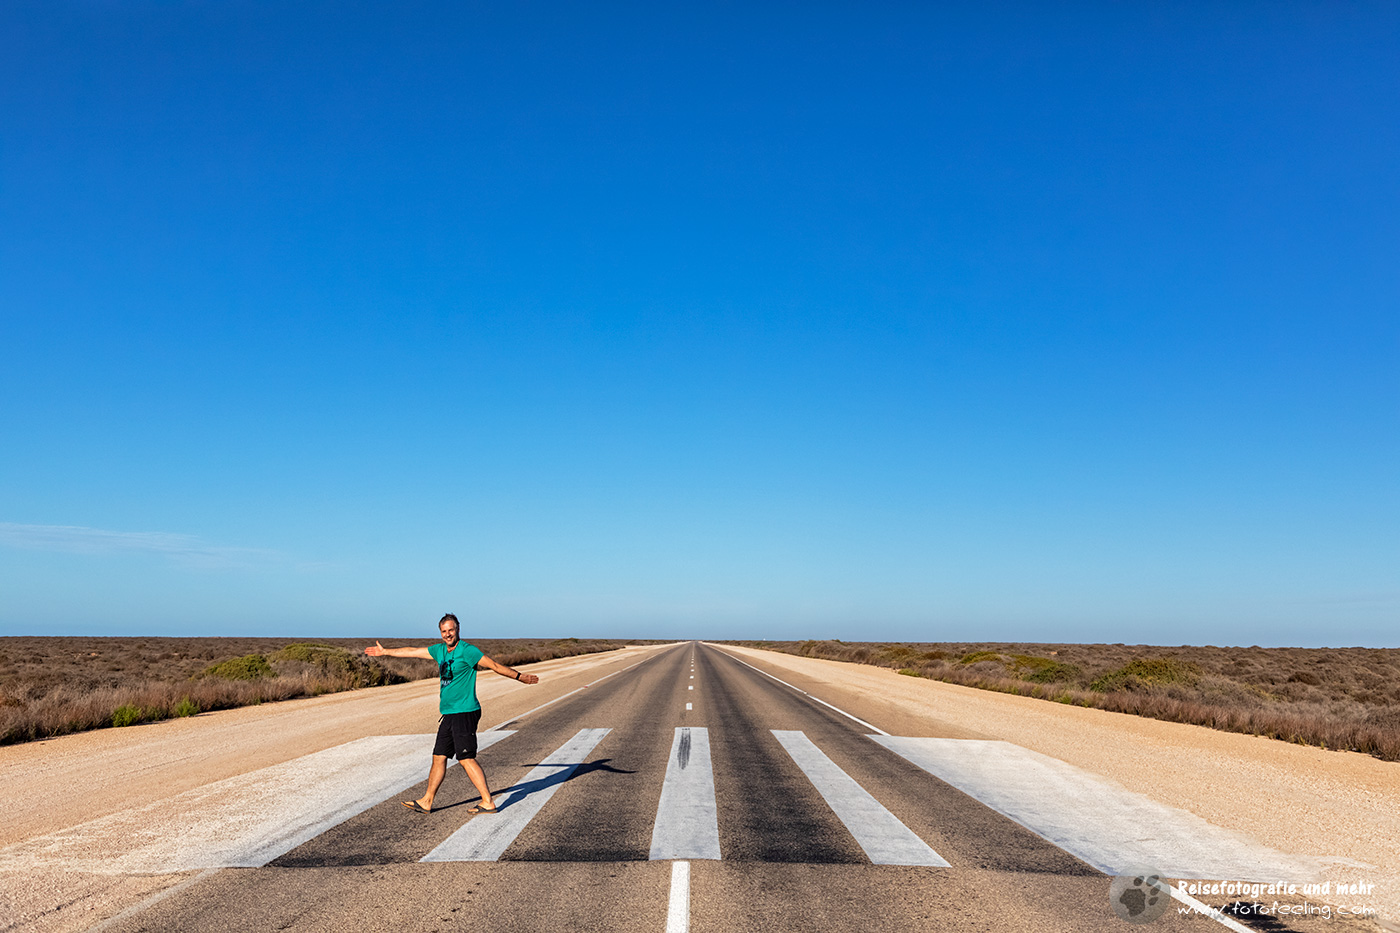 Chris auf dem Zebrastreifen, der aber eine Landebahn darstellt, Nullarbor Ebene, South Australia, Australien